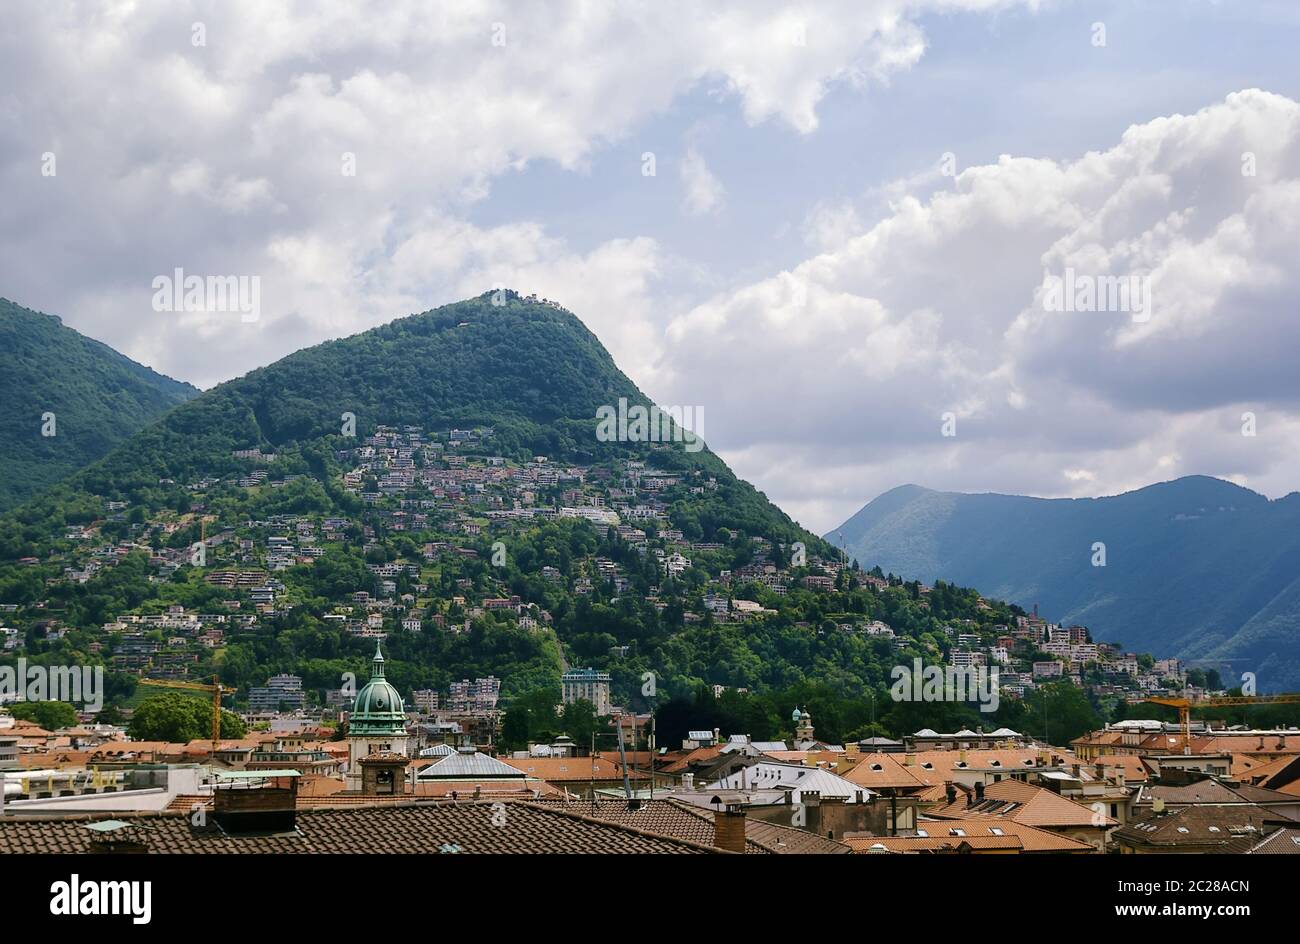 Monte Bre moutain, Lugano Stock Photo